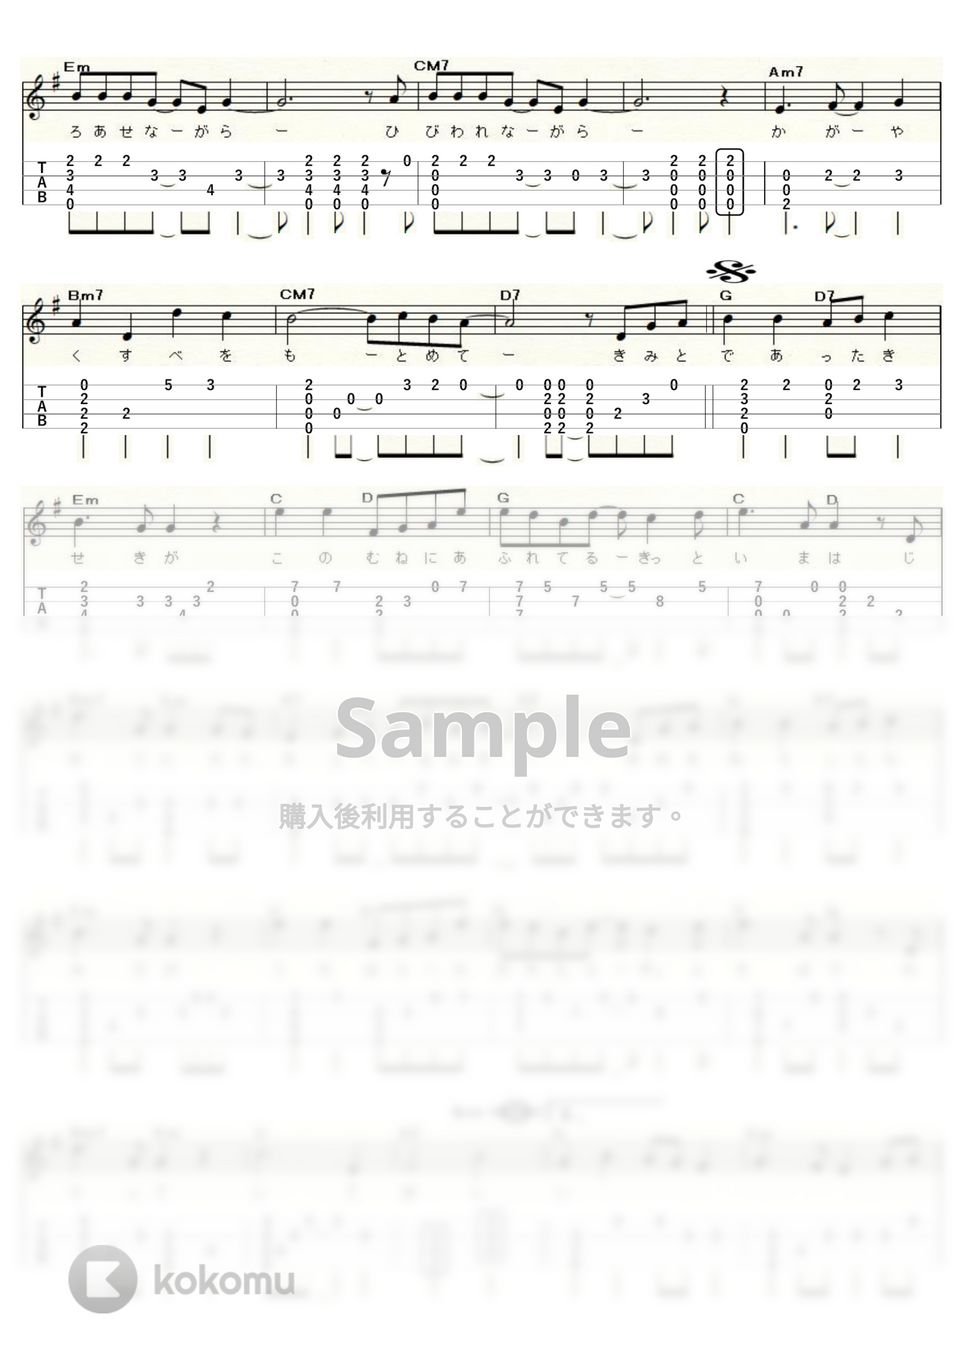 スピッツ - 空も飛べるはず (ｳｸﾚﾚｿﾛ/High-G・Low-G/中級) by ukulelepapa